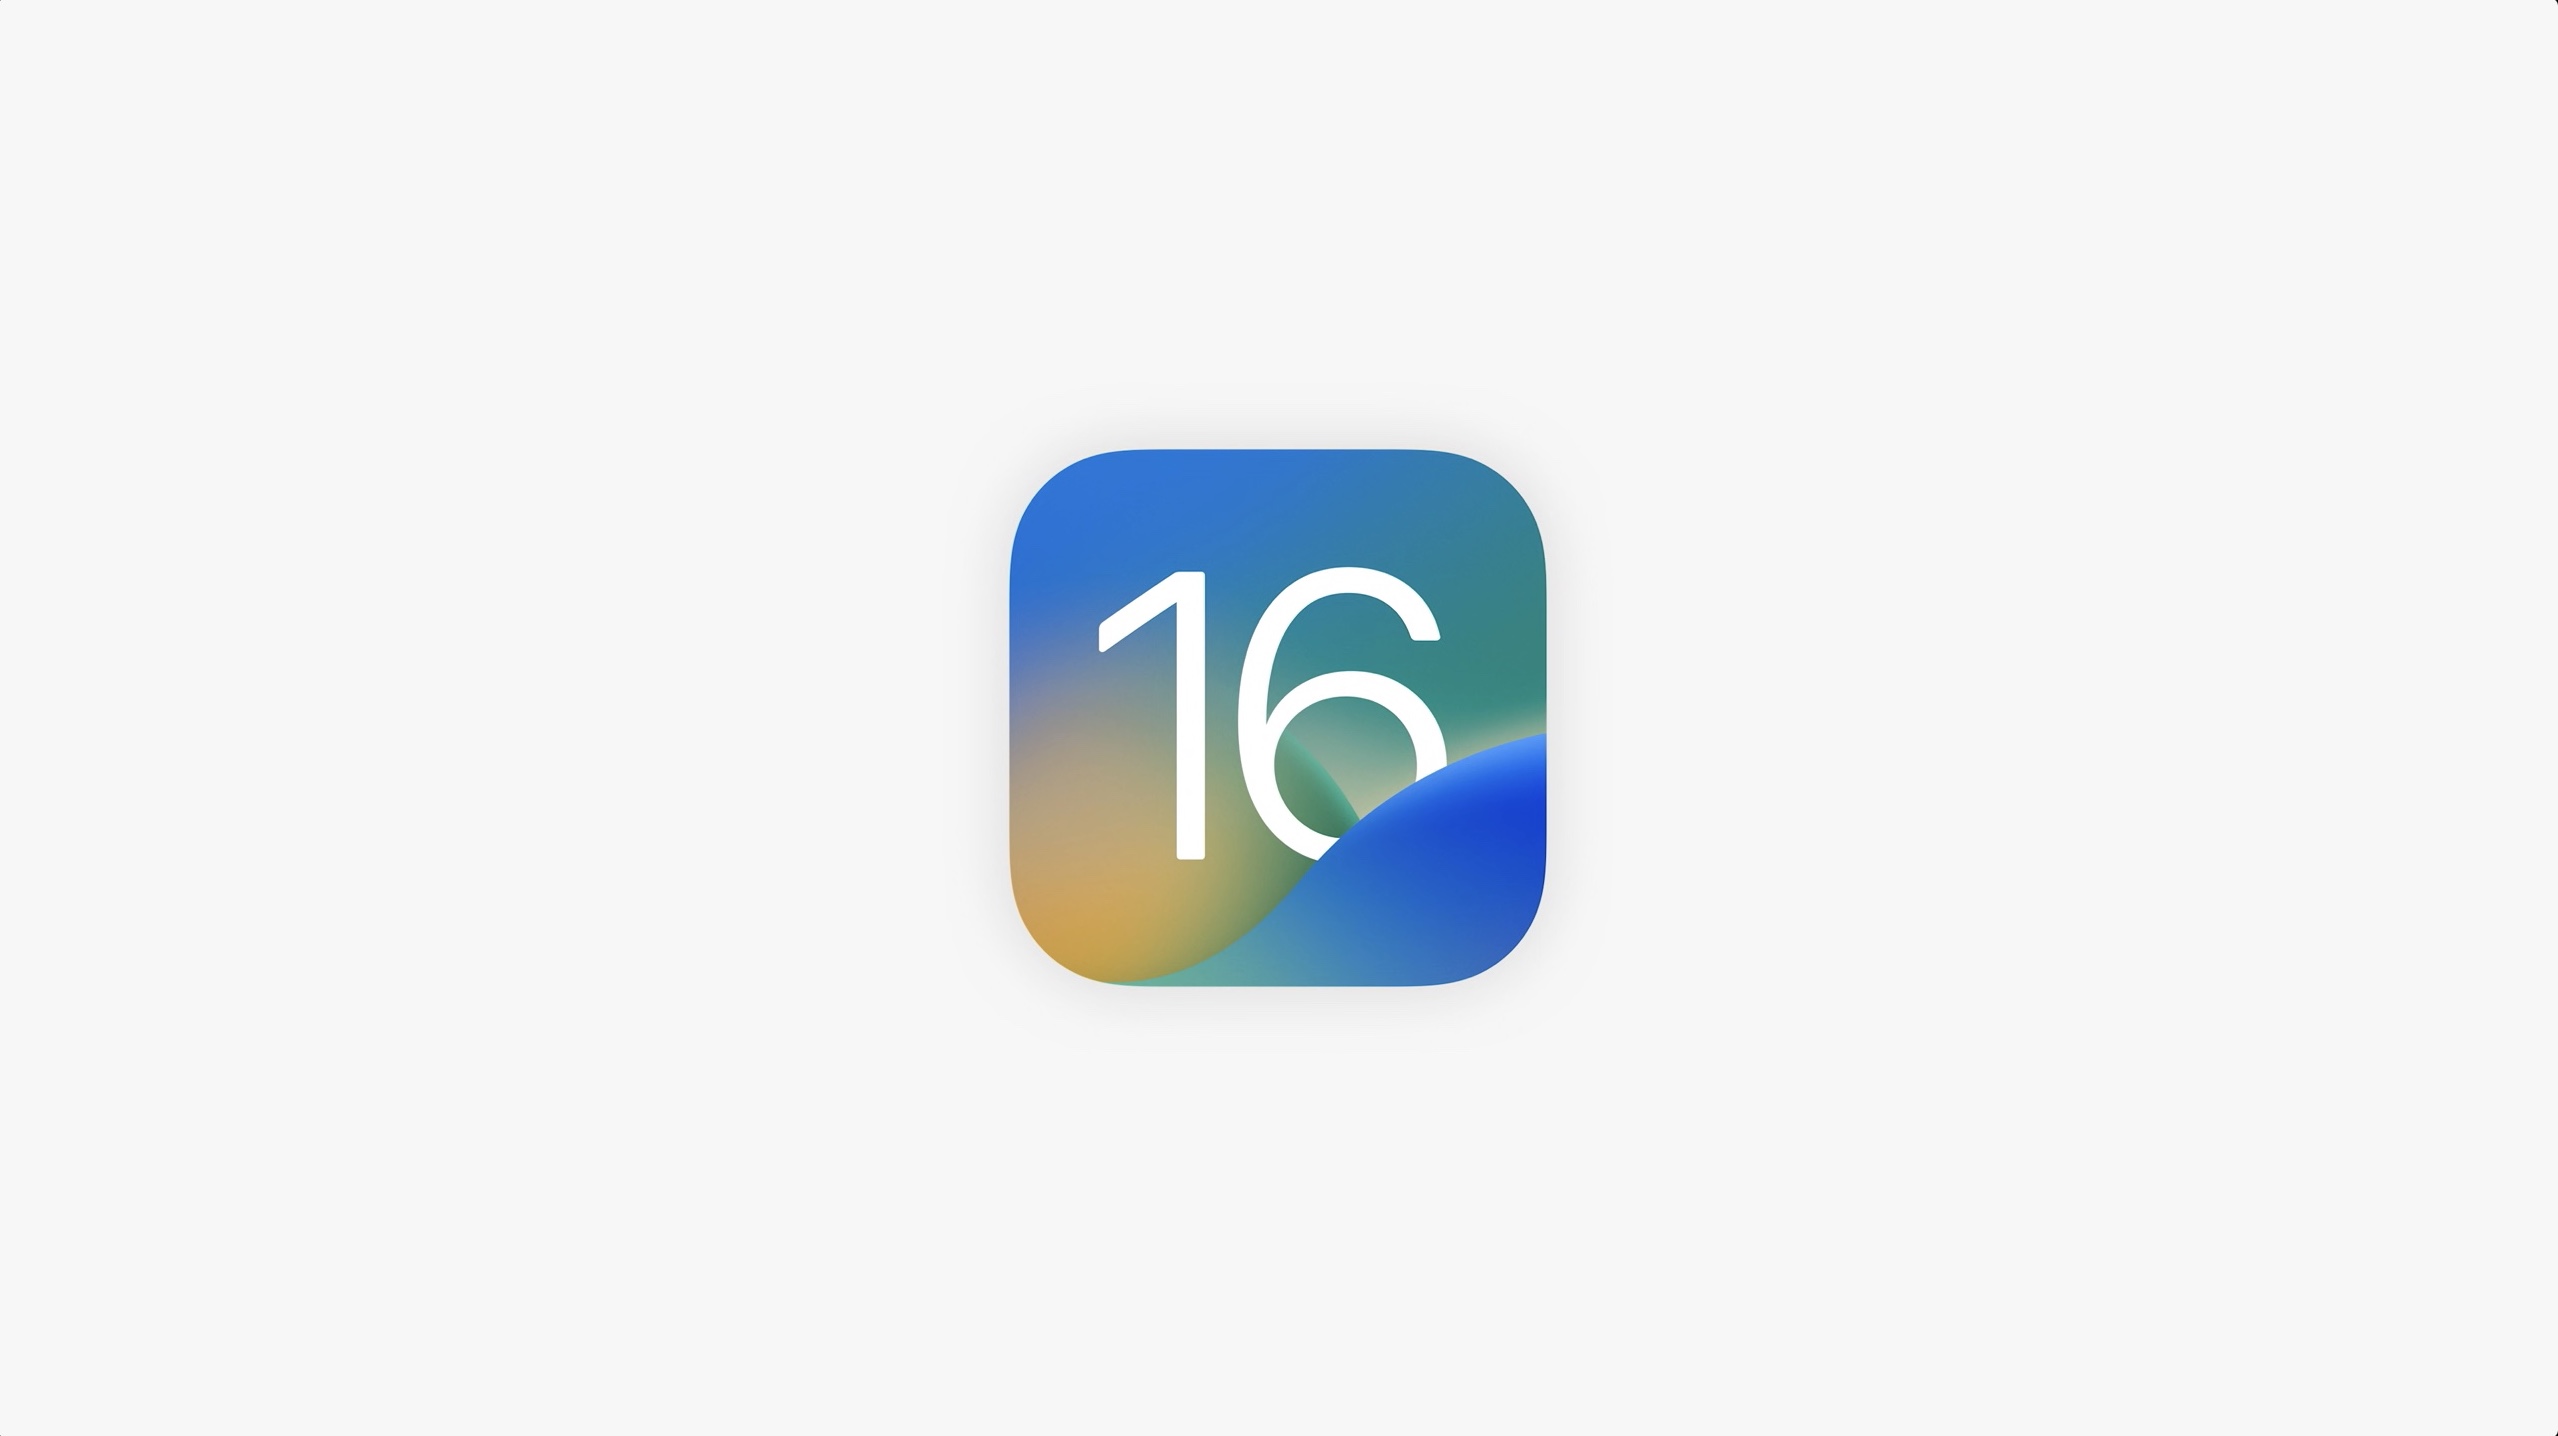 Icône iOS 16 sur un fond uni gris clair